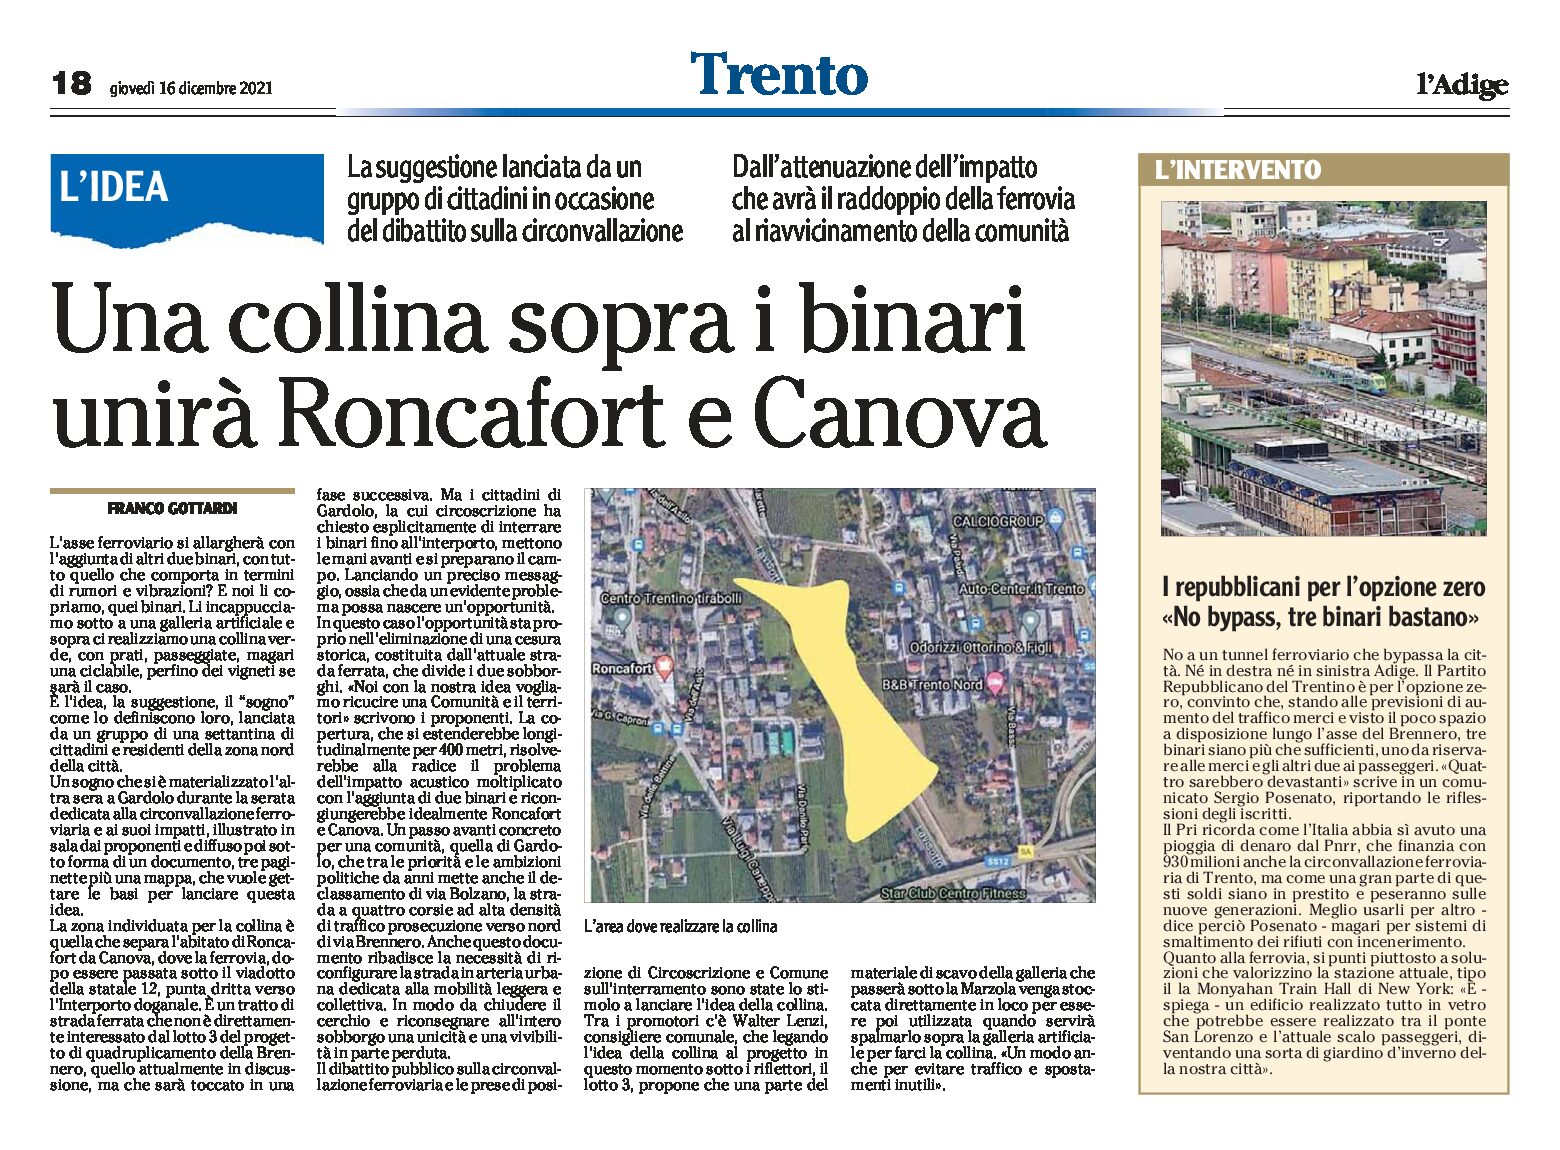 Trento bypass: una collina sopra i binari unirà Roncafort e Canova